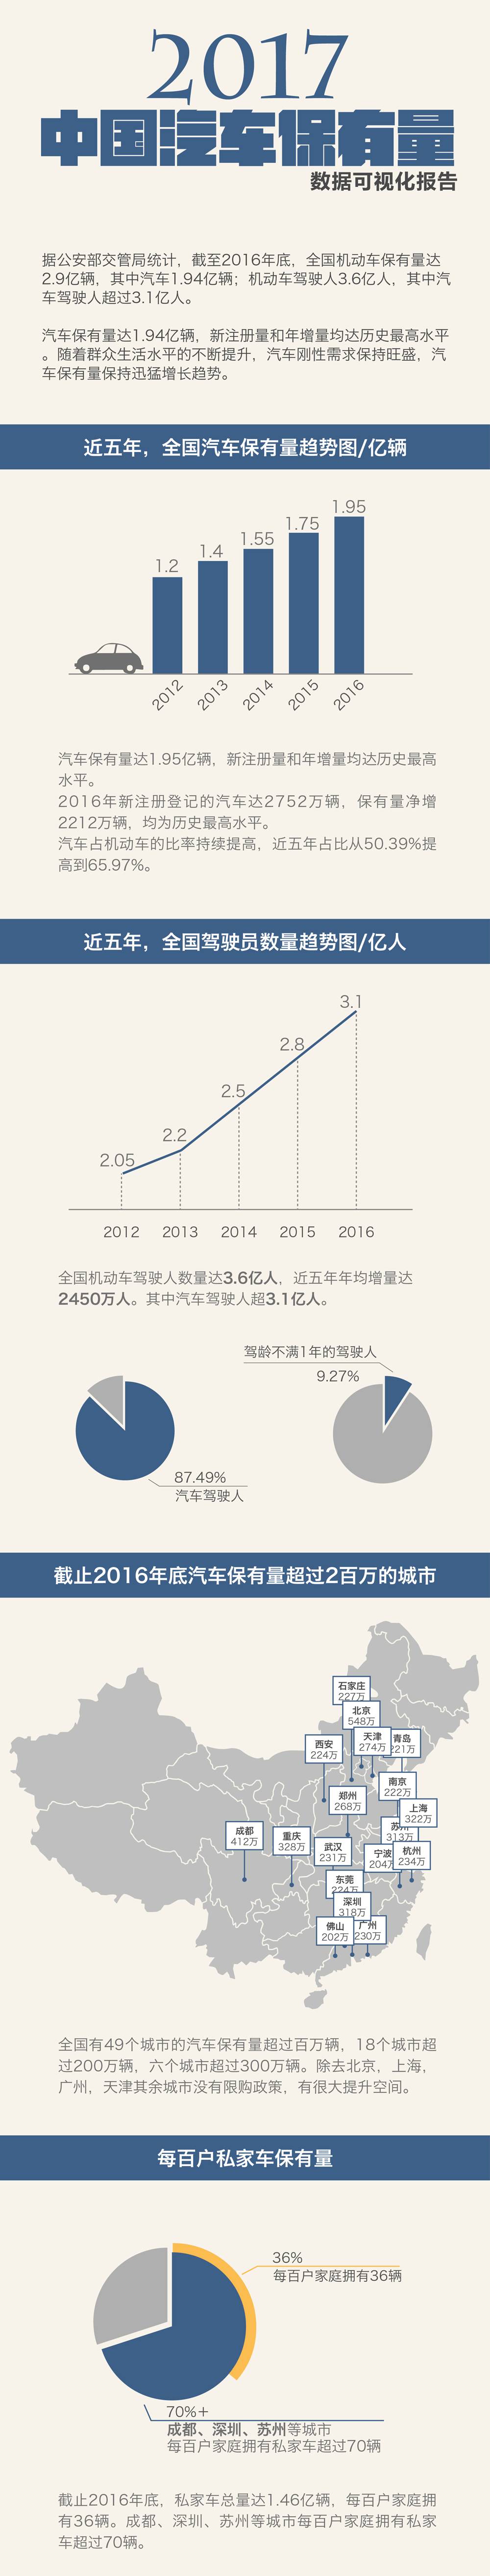 2017中国汽车保有量可视化报告